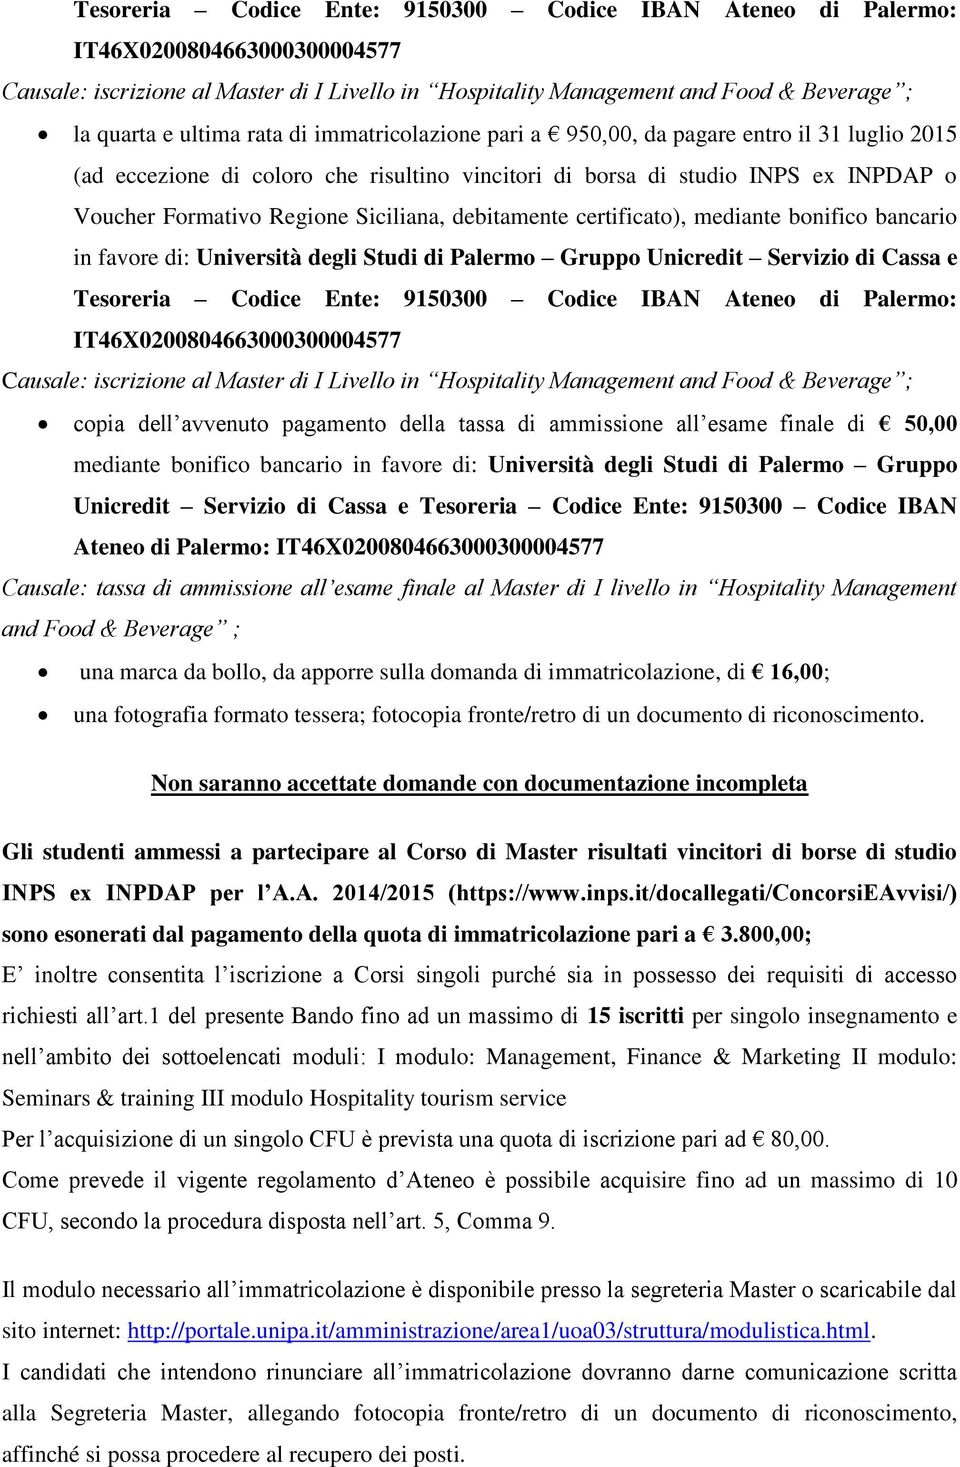 debitamente certificato), mediante bonifico bancario in favore di: Università degli Studi di Palermo Gruppo Unicredit Servizio di Cassa e Tesoreria Codice Ente: 9150300 Codice IBAN Ateneo di Palermo: